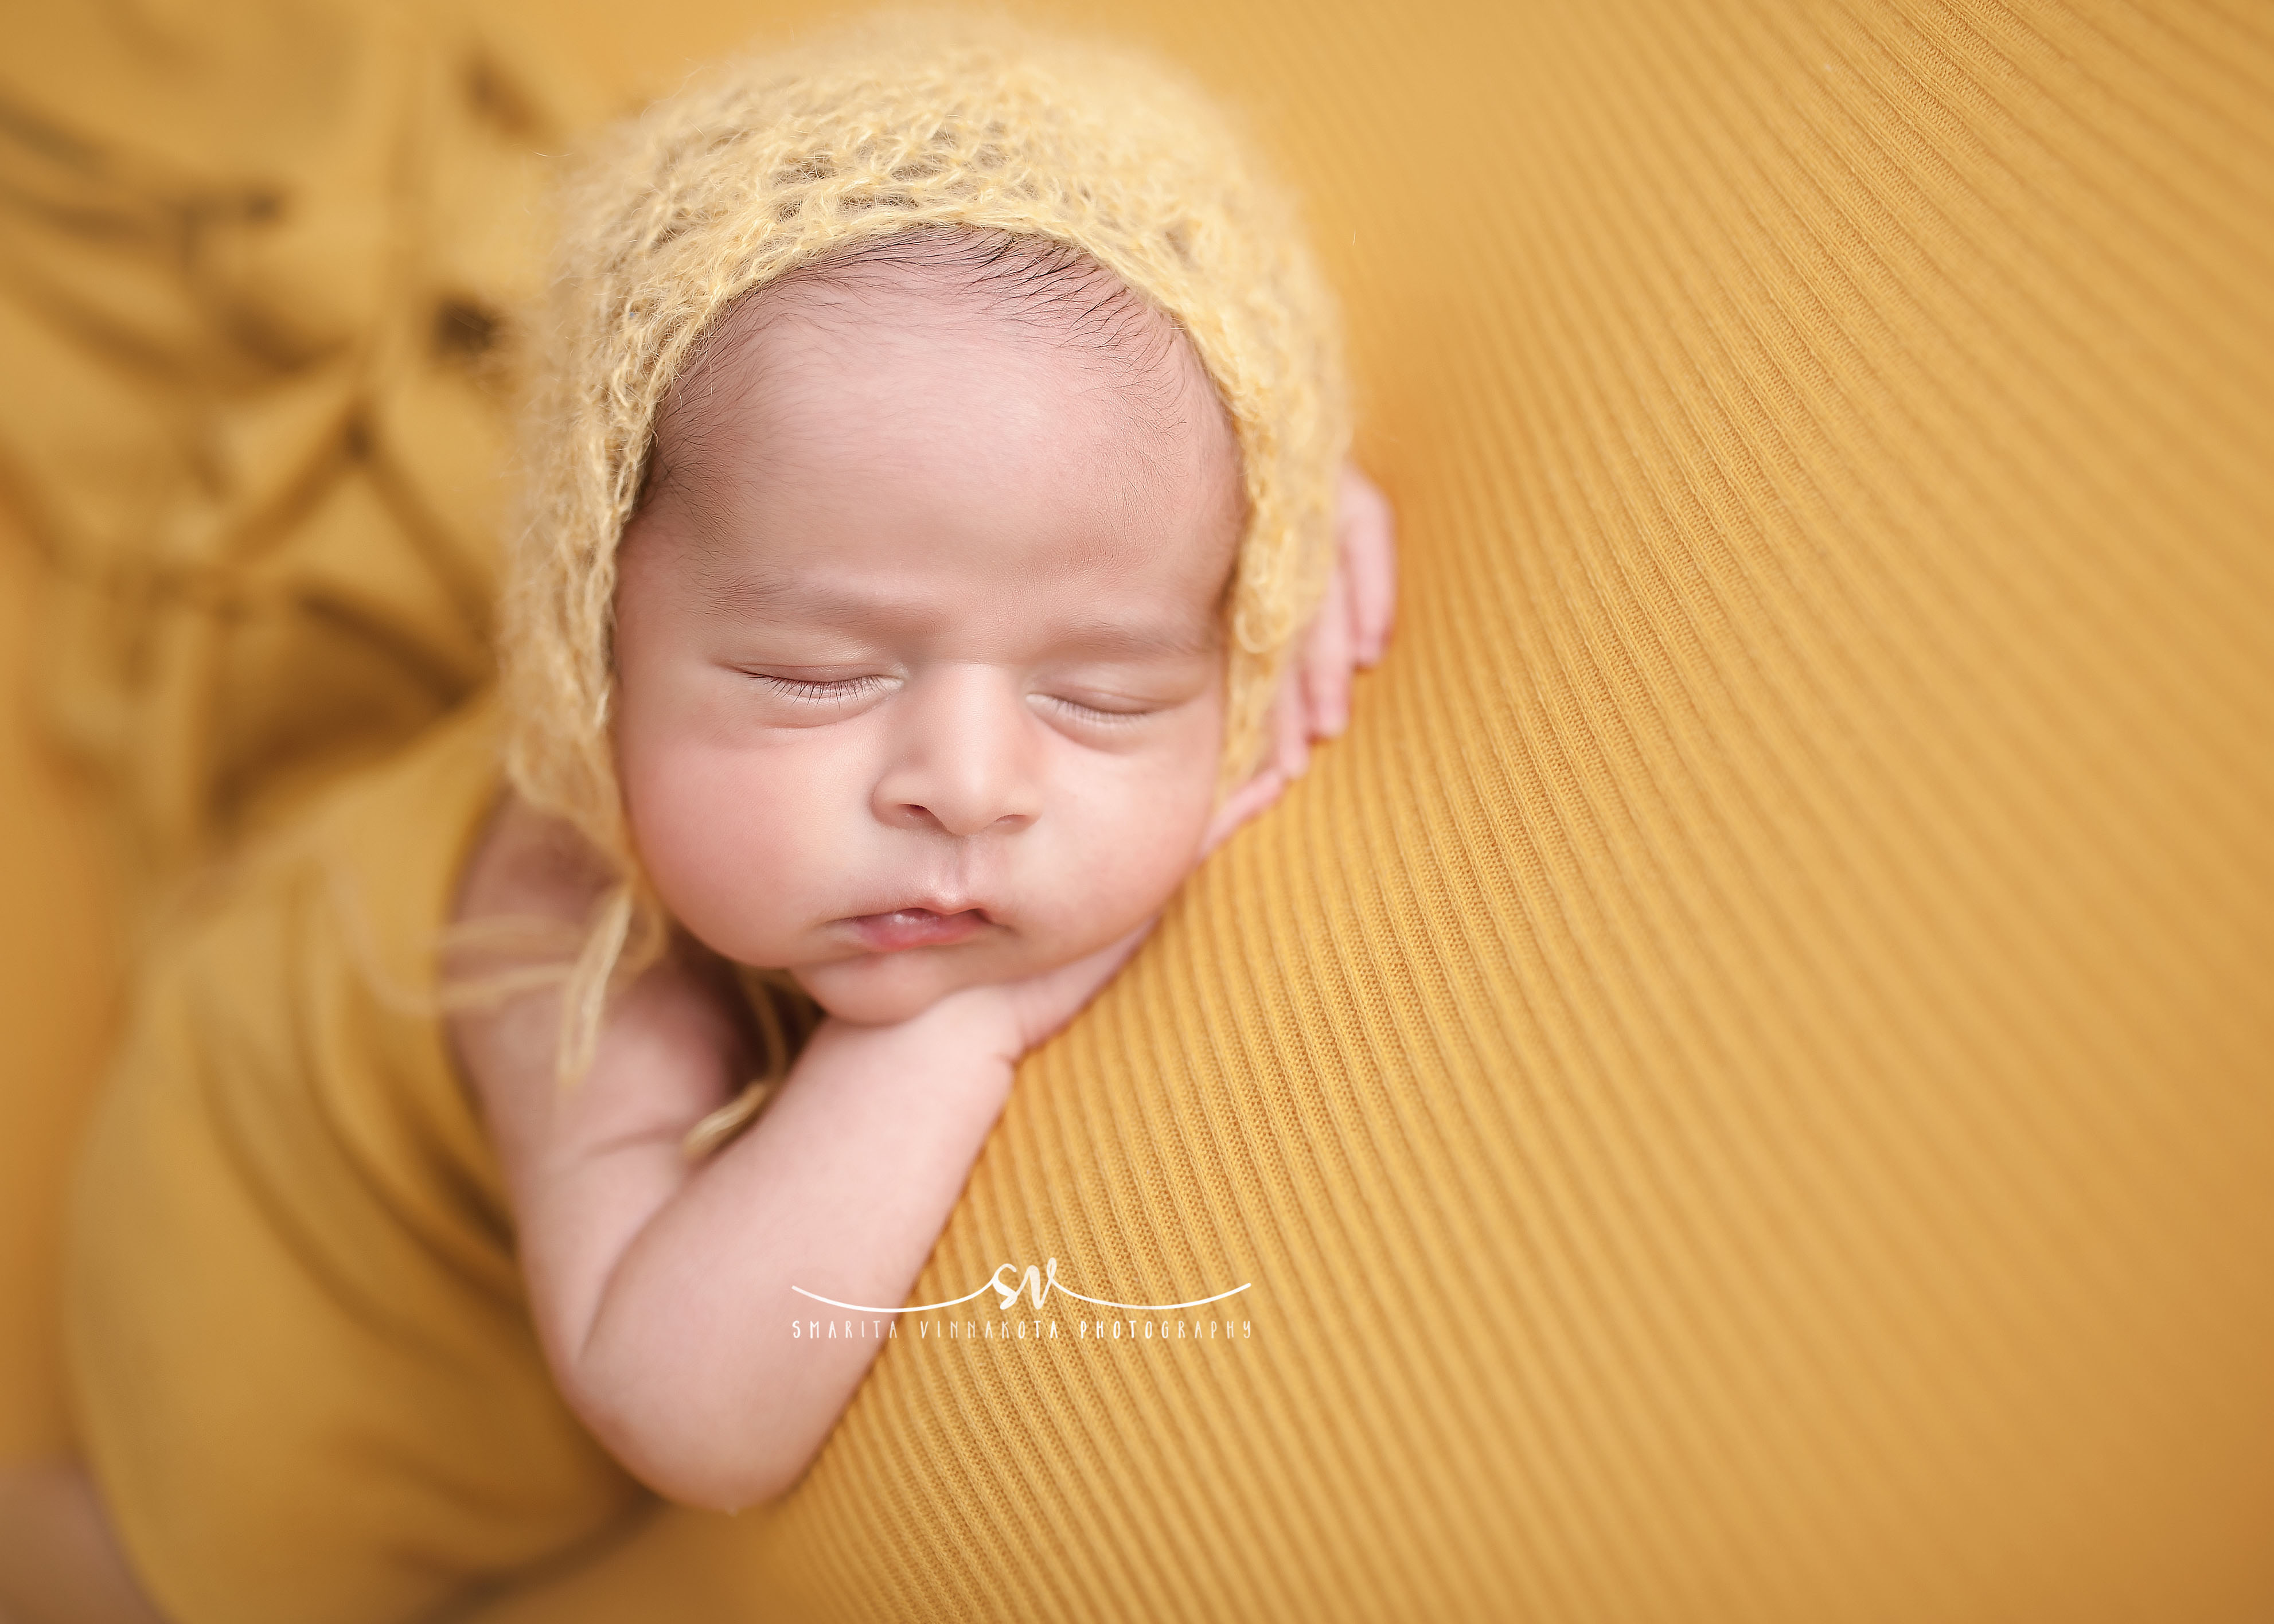 Smarita-Vinnakota-Photography_Newborn-1